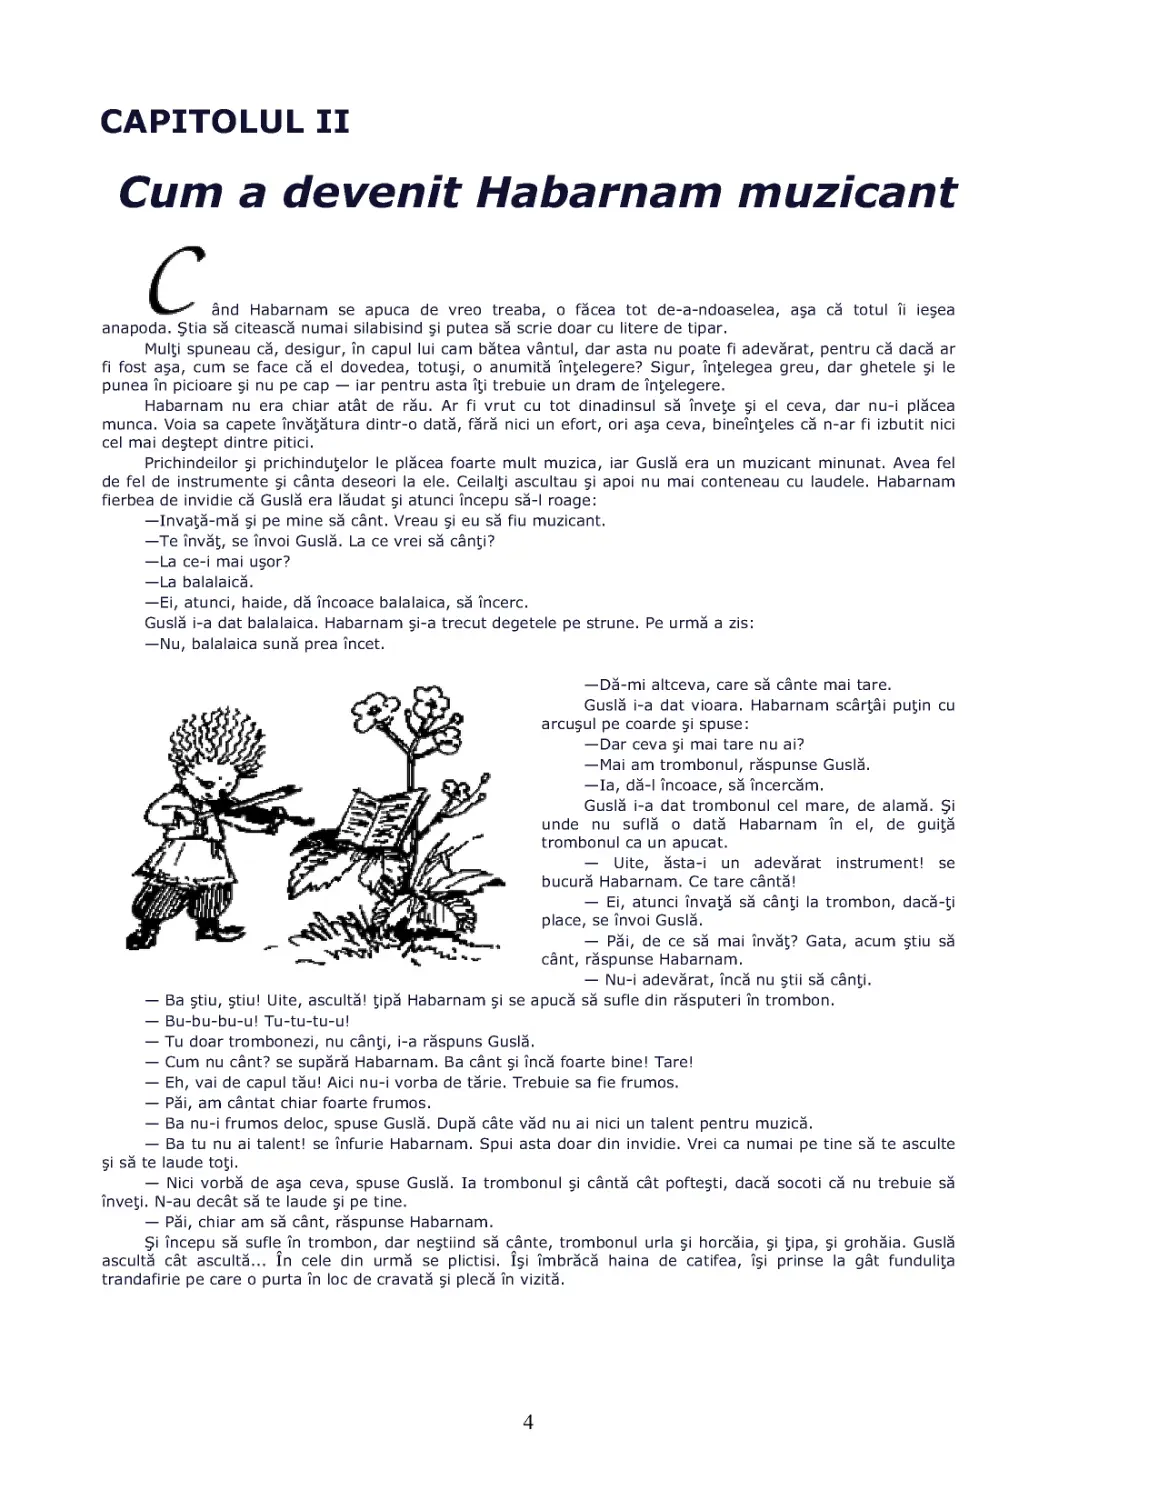 Cap.II Cum a devenit Habarnam muzicant